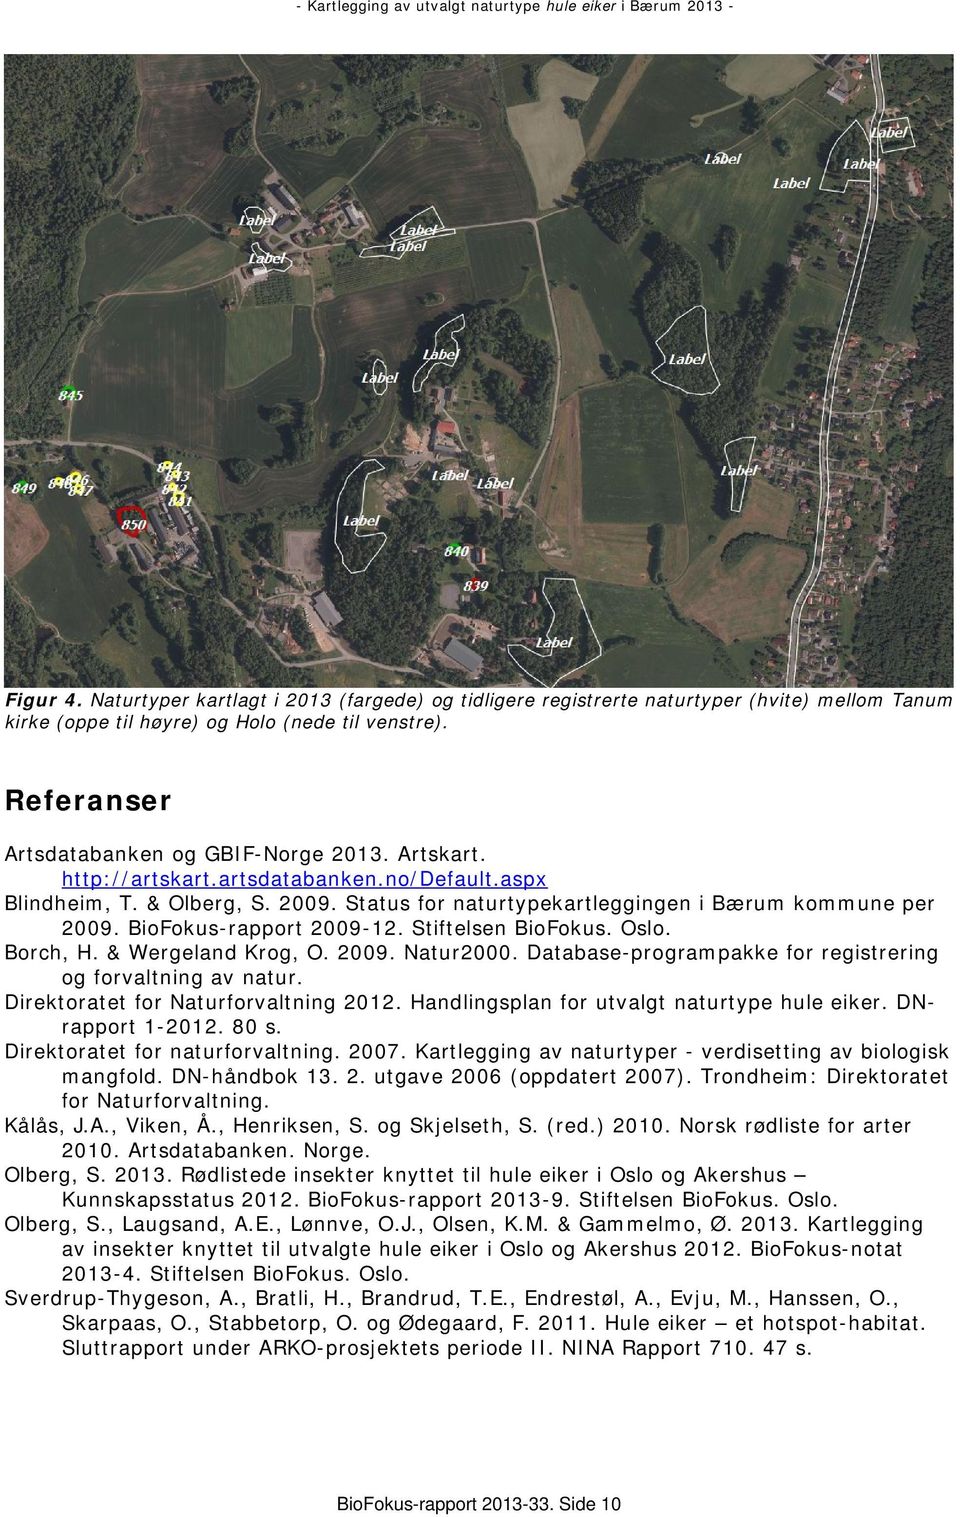 Oslo. Borch, H. & Wergeland Krog, O. 2009. Natur2000. Database-programpakke for registrering og forvaltning av natur. Direktoratet for Naturforvaltning 2012.